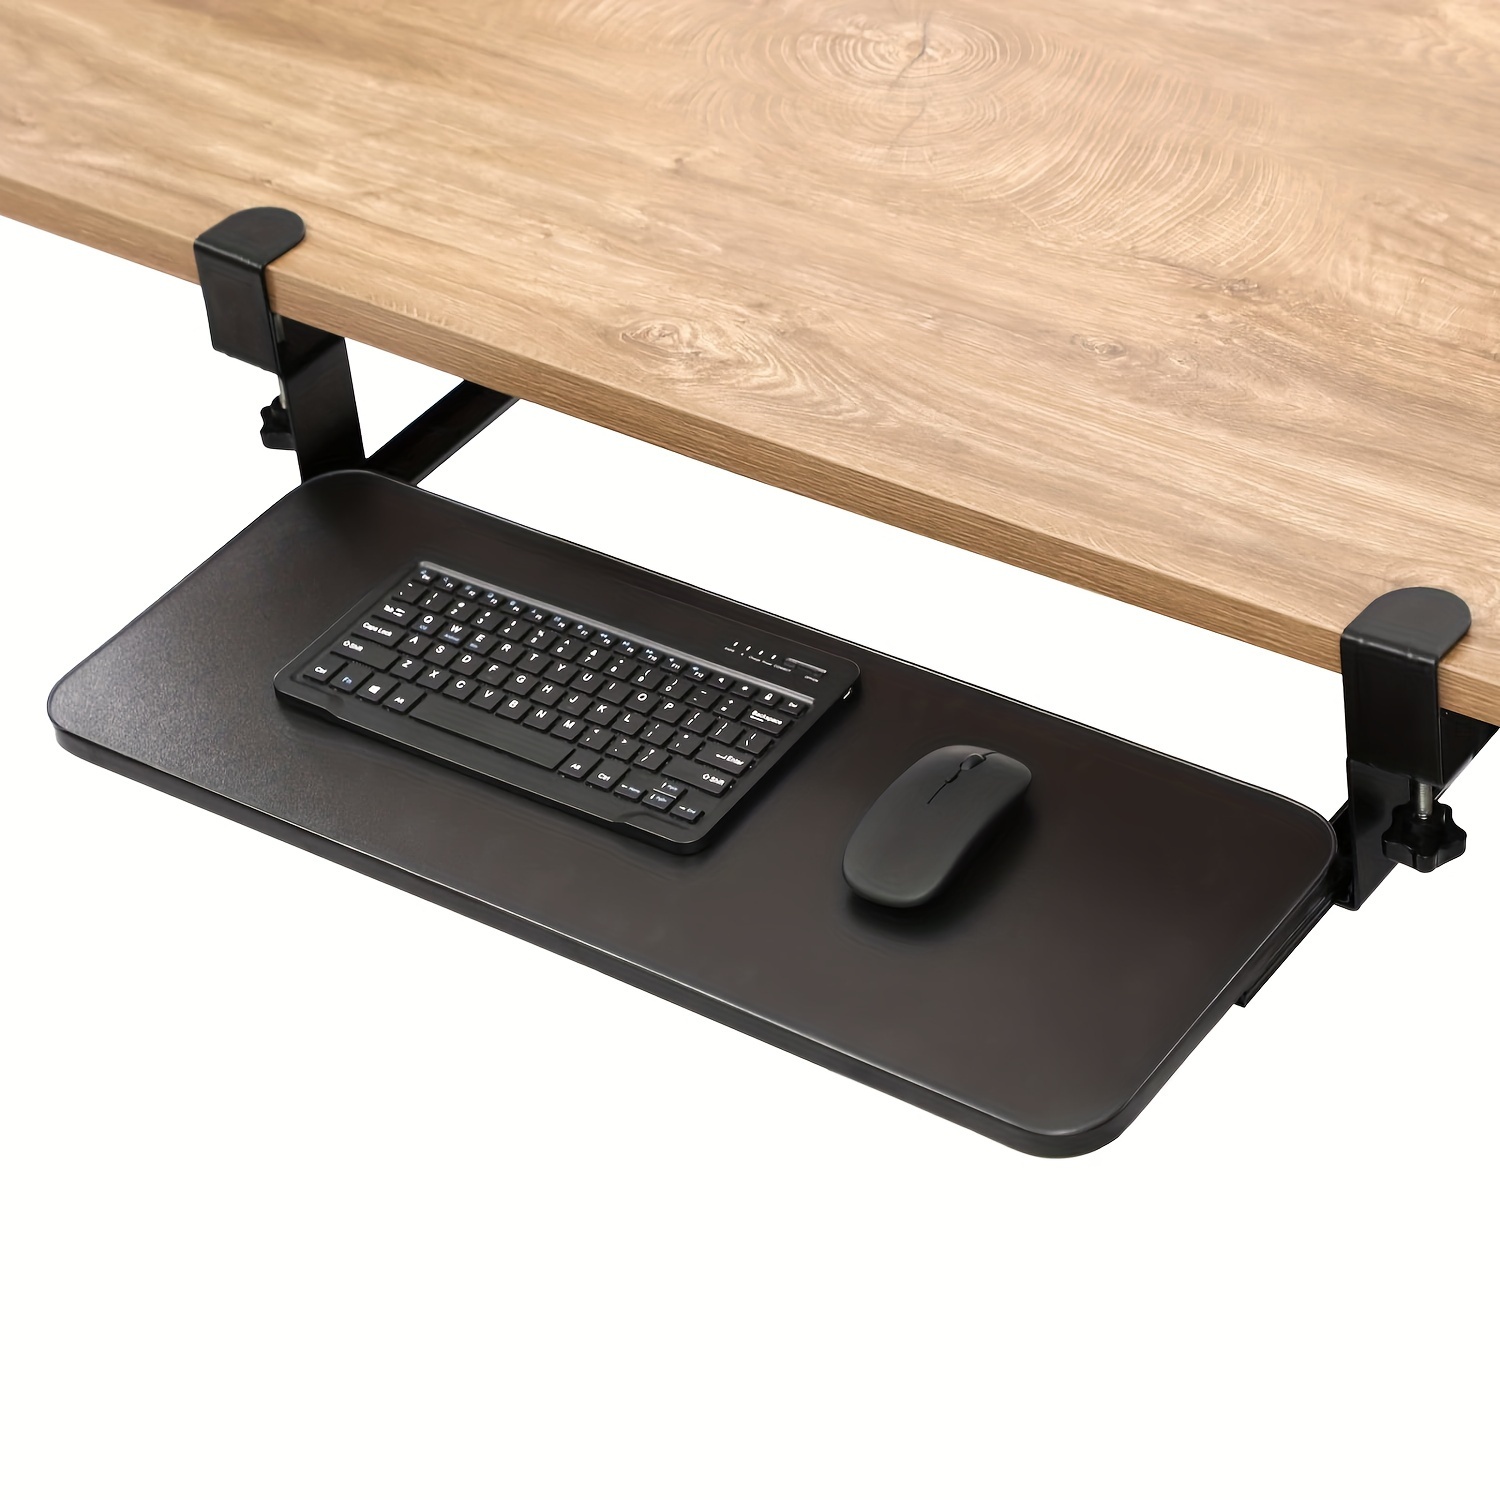  Bandeja para teclado de madera, 54/60/27.6 x 10.6 in, bandeja  deslizante ajustable, soporte para teclado, almacenamiento de mouse, 5  colores, ergonómica, mejora de la postura, cajón de teclado debajo del  escritorio